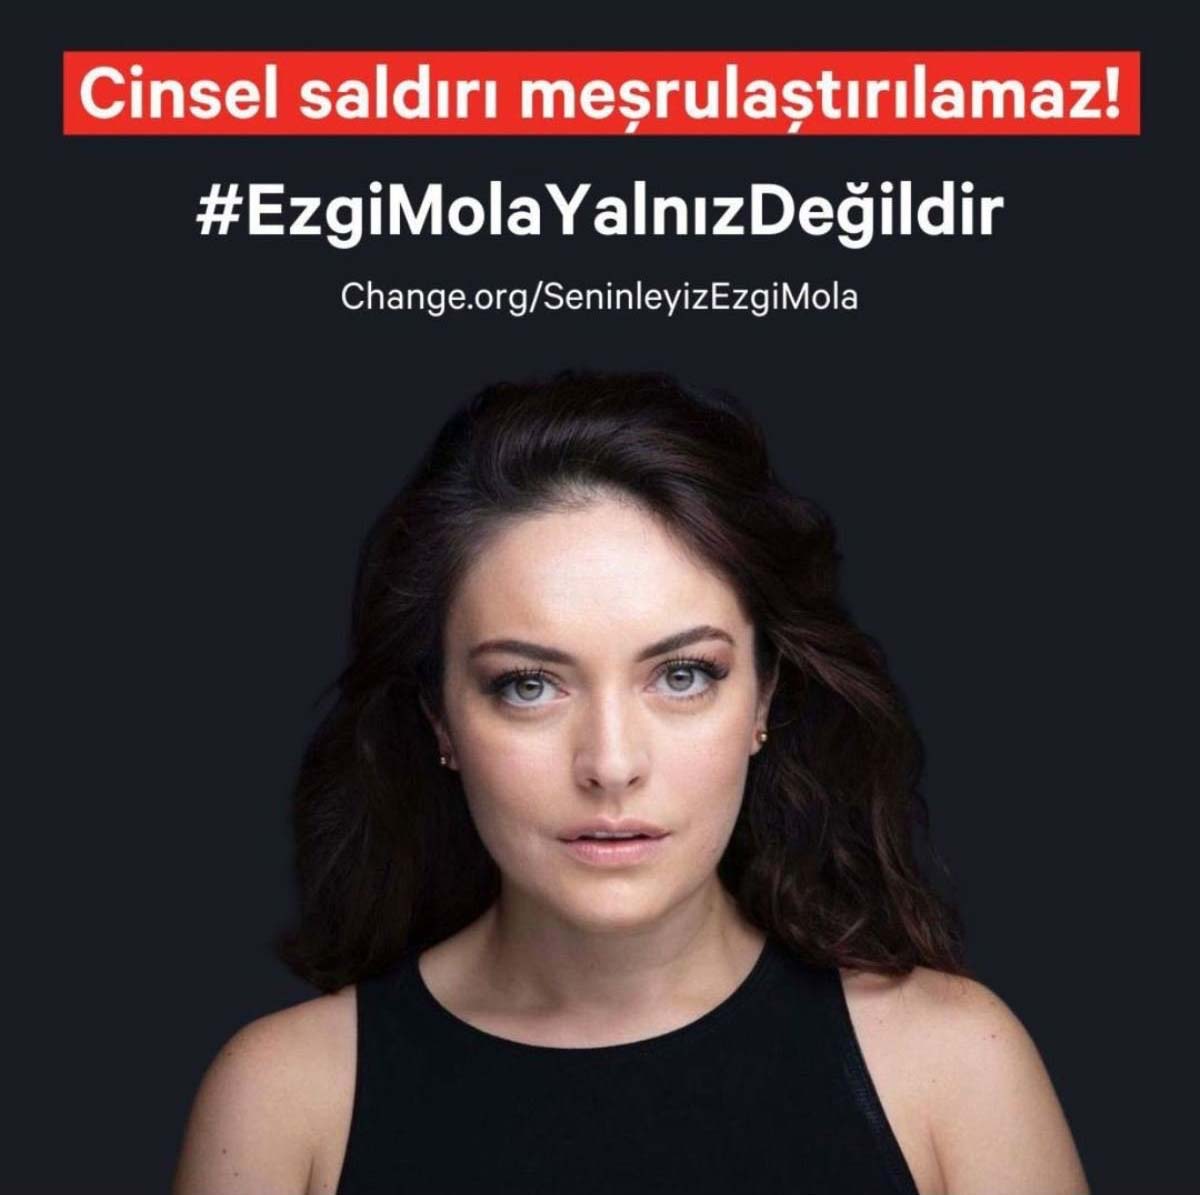 Hande Erçel'den Ezgi Mola'ya destek: 'Cinsel saldırı meşrulaştırılamaz'